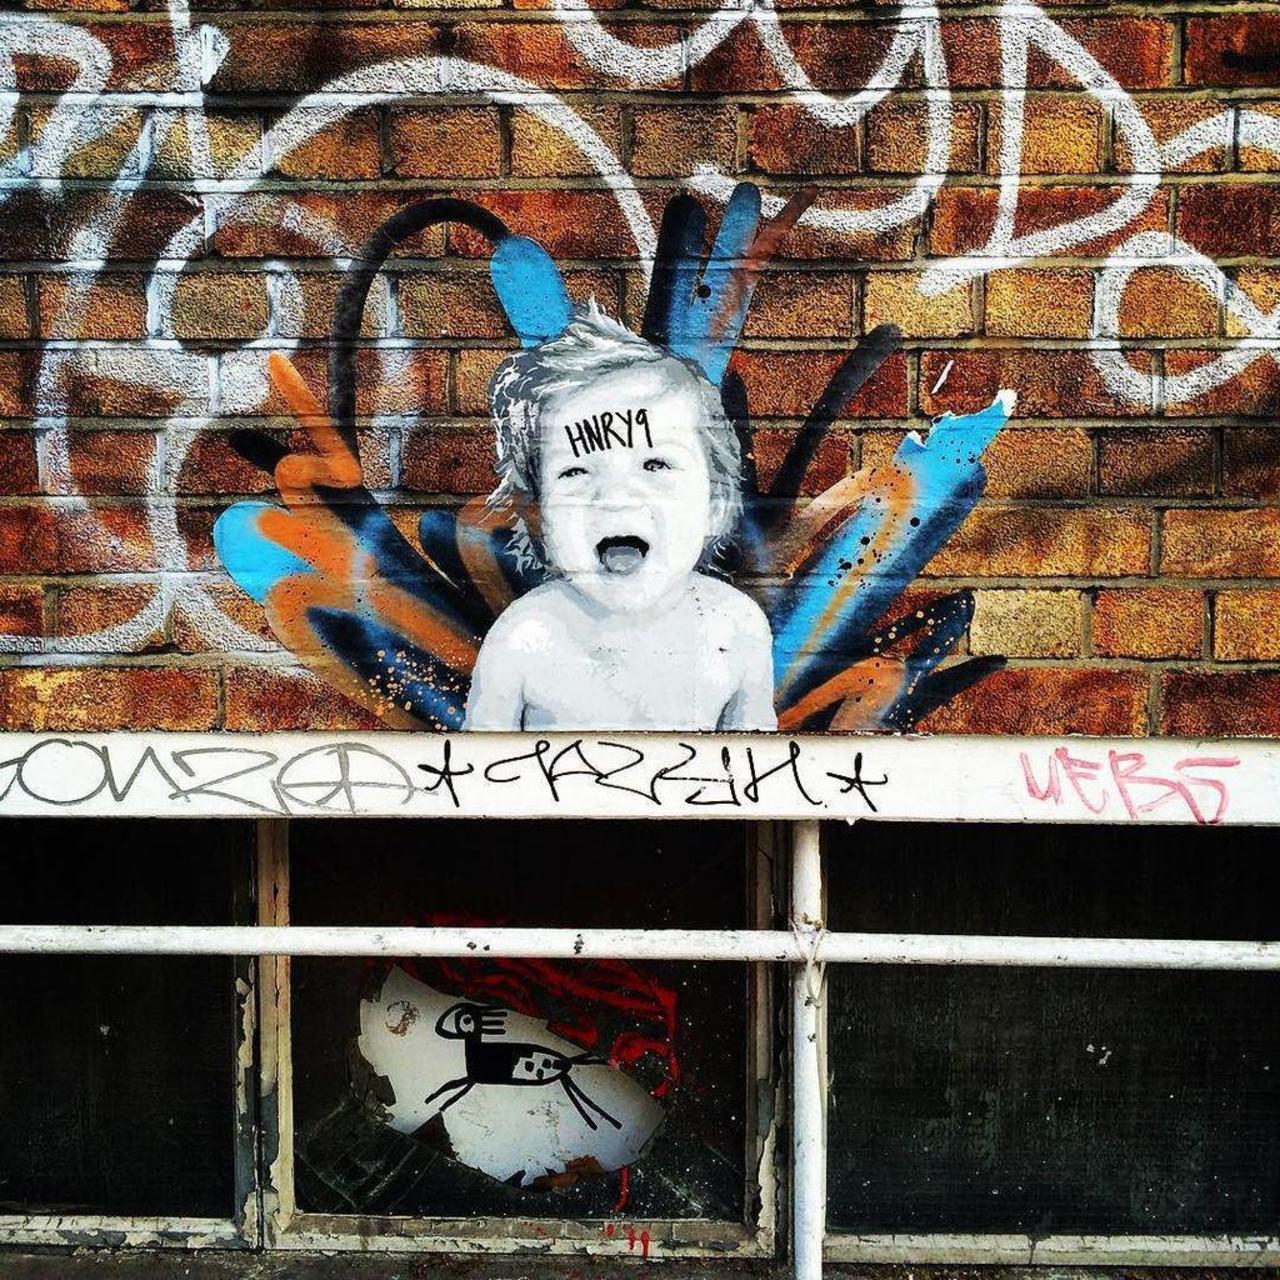 #graffitiporn  #wallporn #mural  #murales  #graffitiporn #lovestreetart #streetart #graffiti #london #loveshoreditc… http://t.co/rD7H6Kq5Gk